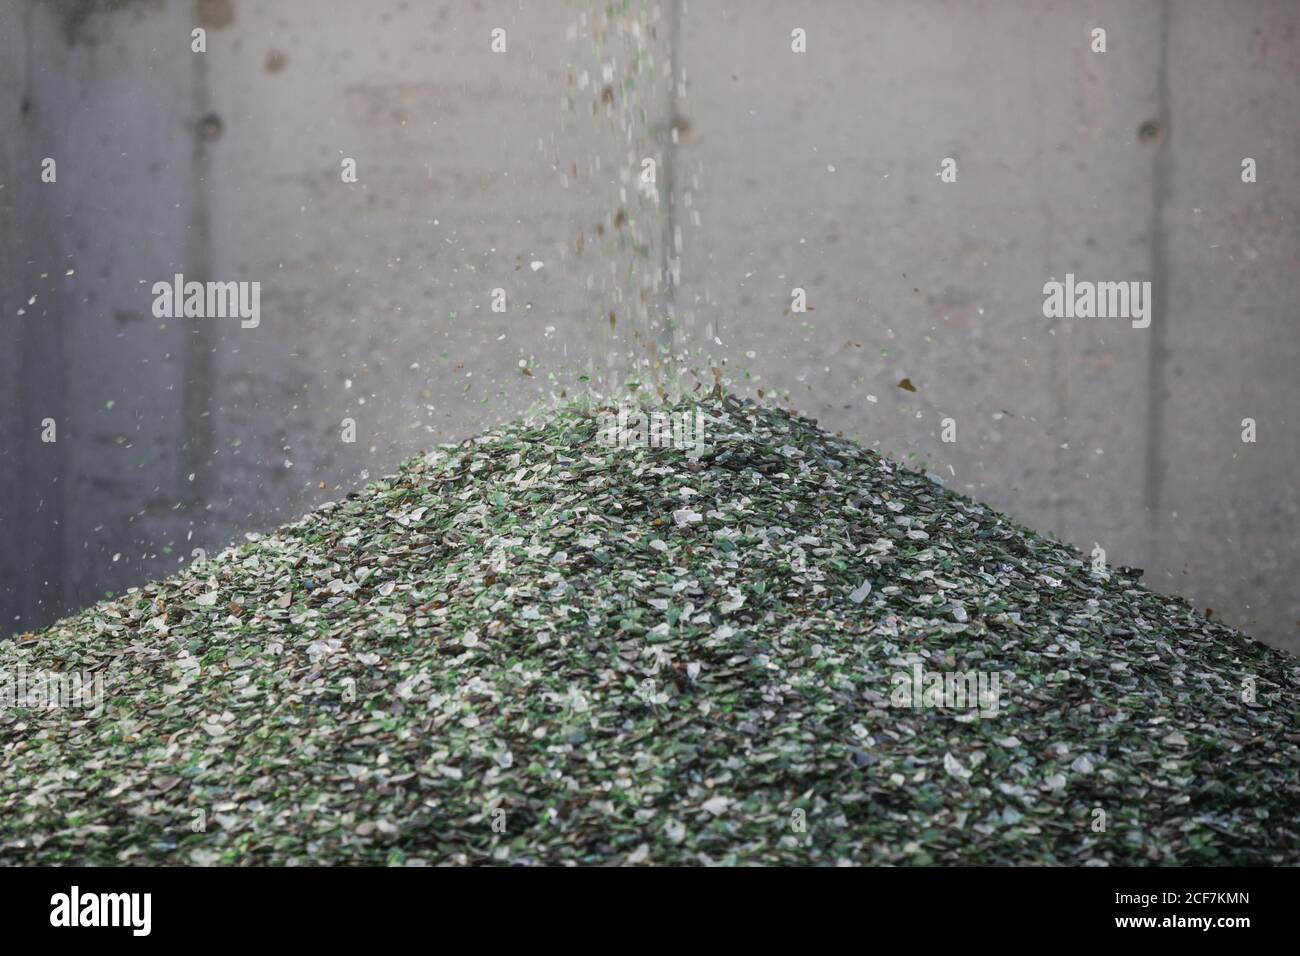 Dettagli con frammenti di vetro che cadono da un nastro trasportatore su una pila in un impianto di riciclaggio del vetro. Foto Stock